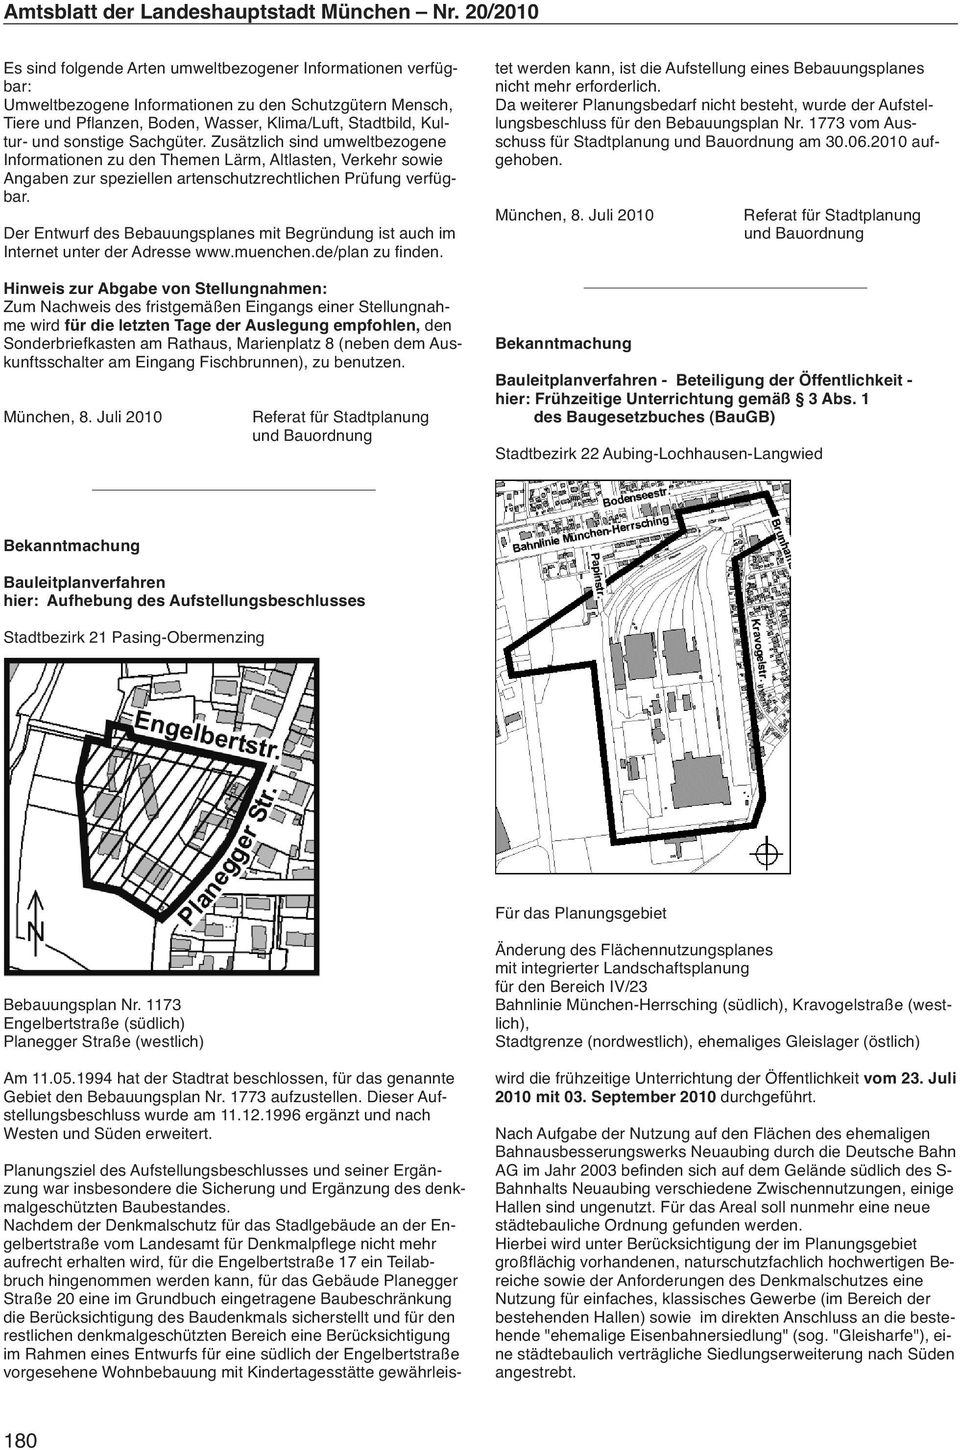 Der Entwurf des Bebauungsplanes mit Begründung ist auch im Internet unter der Adresse www.muenchen.de/plan zu finden.